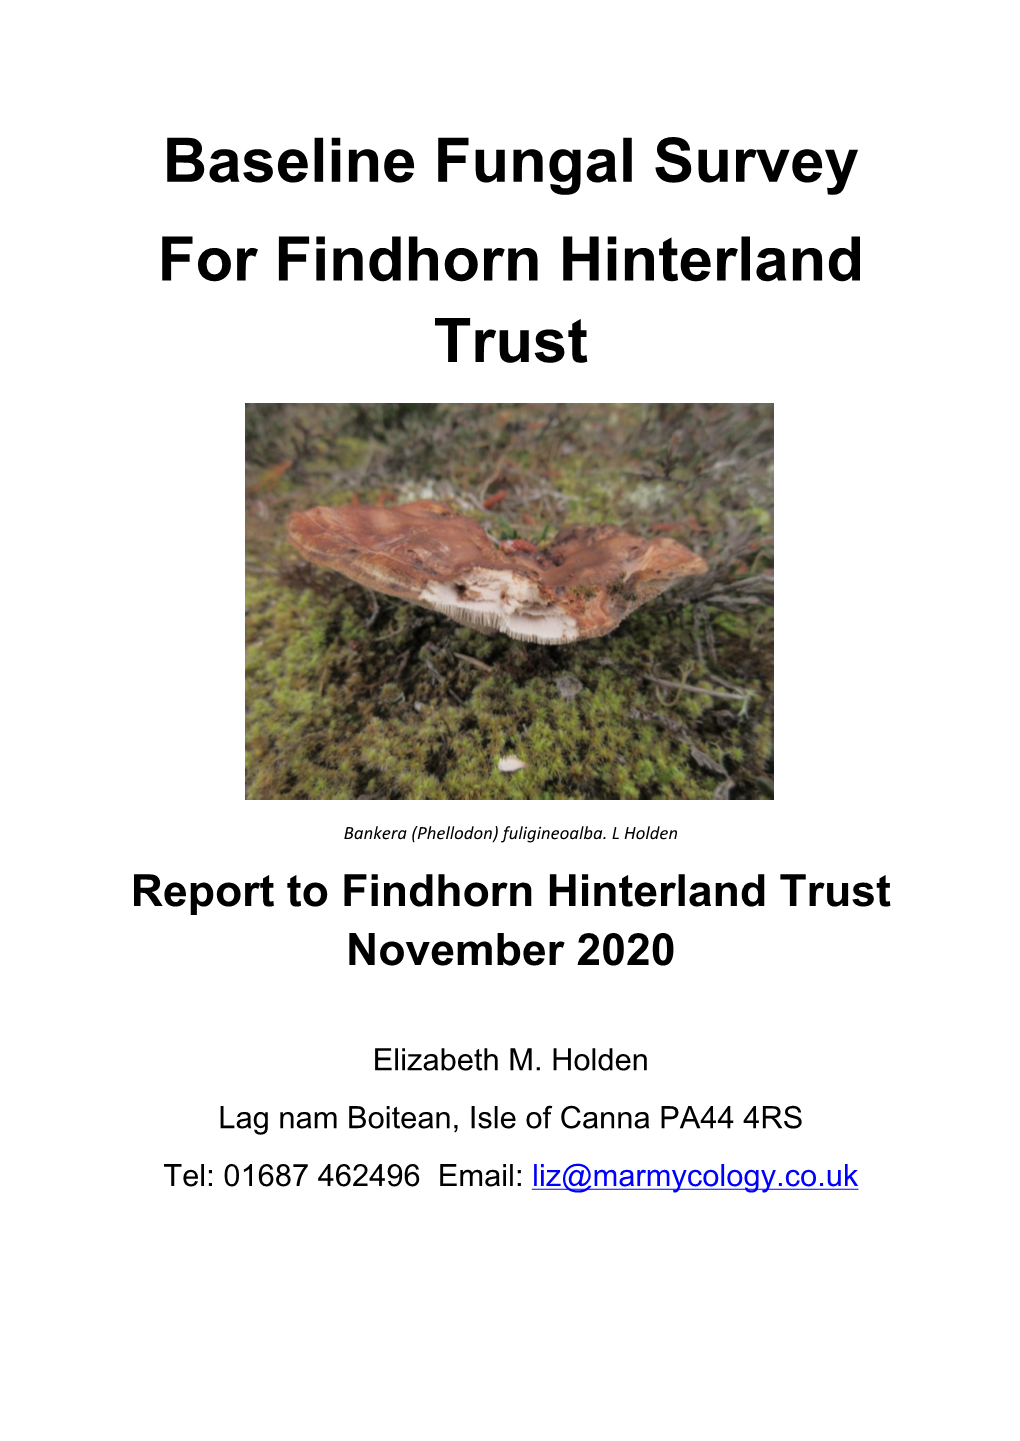 FHT Baseline Fungal Survey Nov 2020